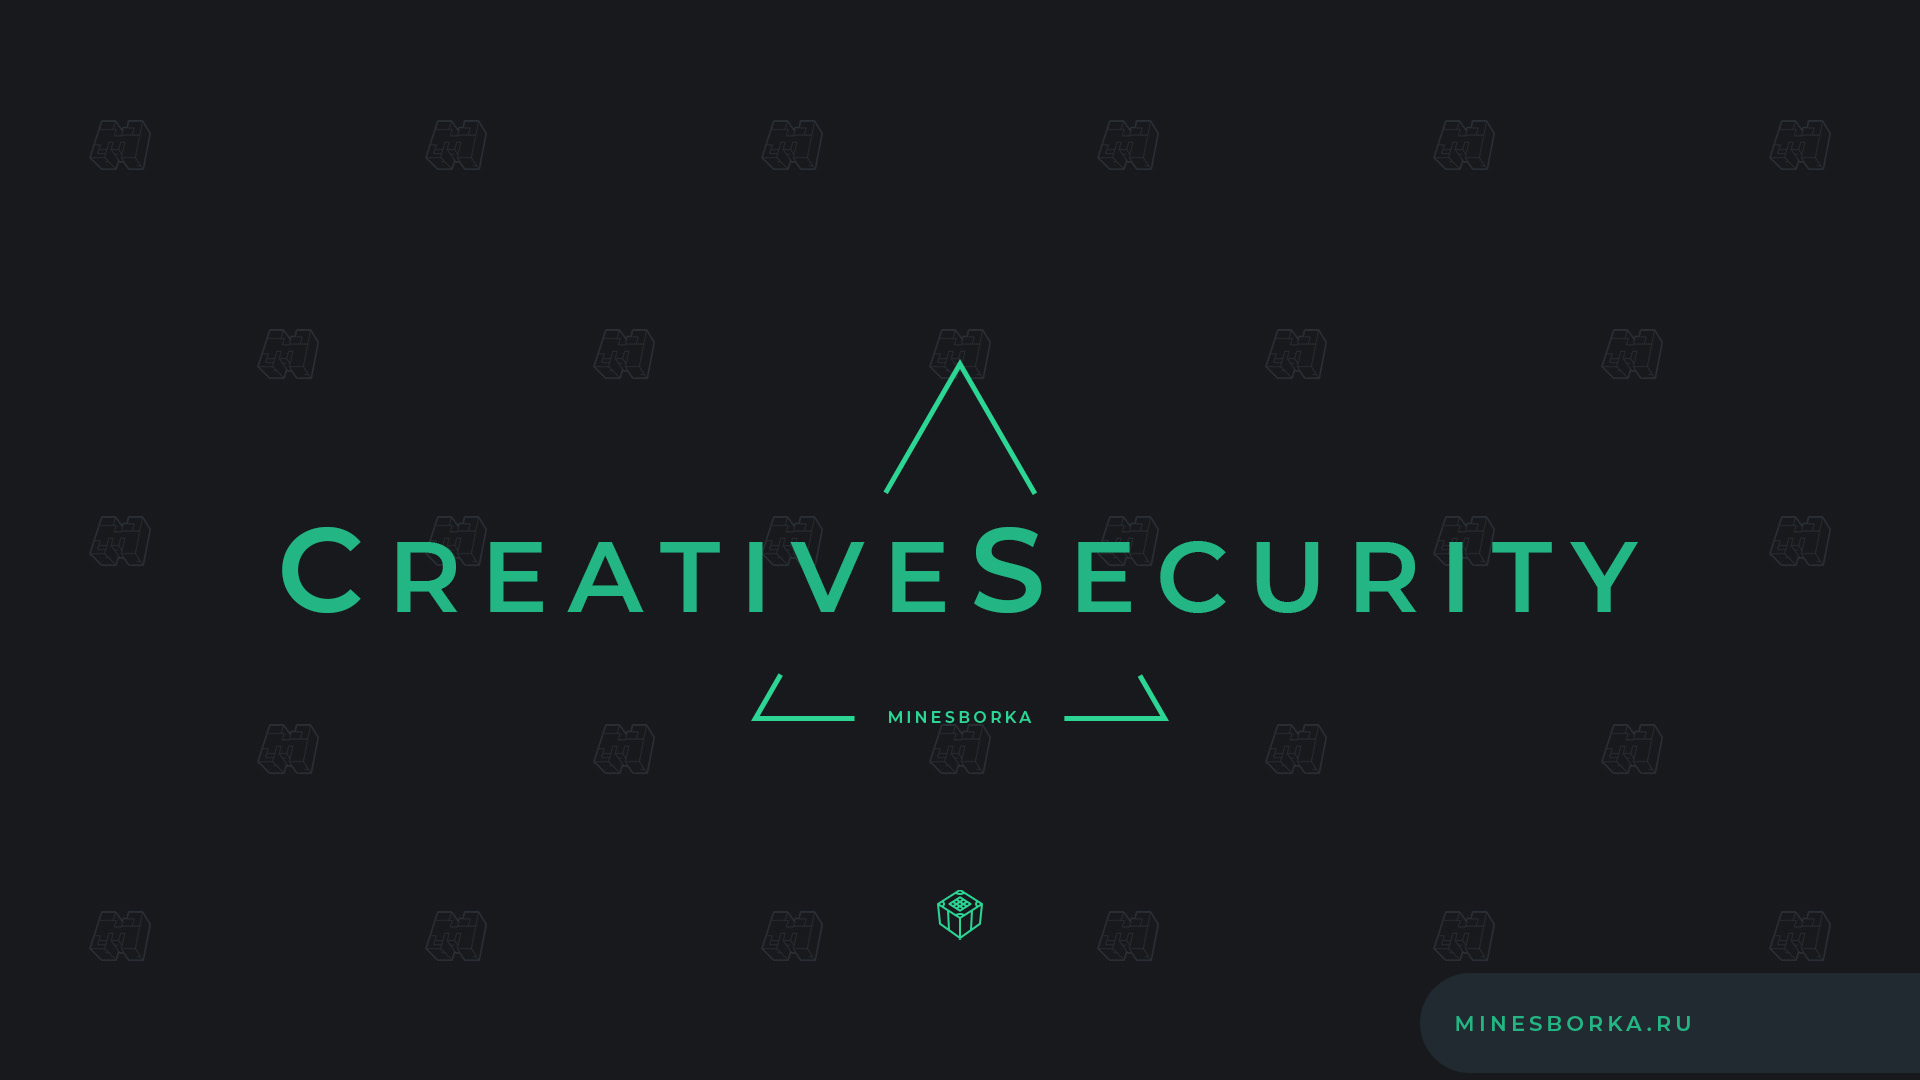 Скачать плагин CreativeSecurity | Лучший плагин на КРЕАТИВ КОНТРОЛЬ на сервере Майнкрафт